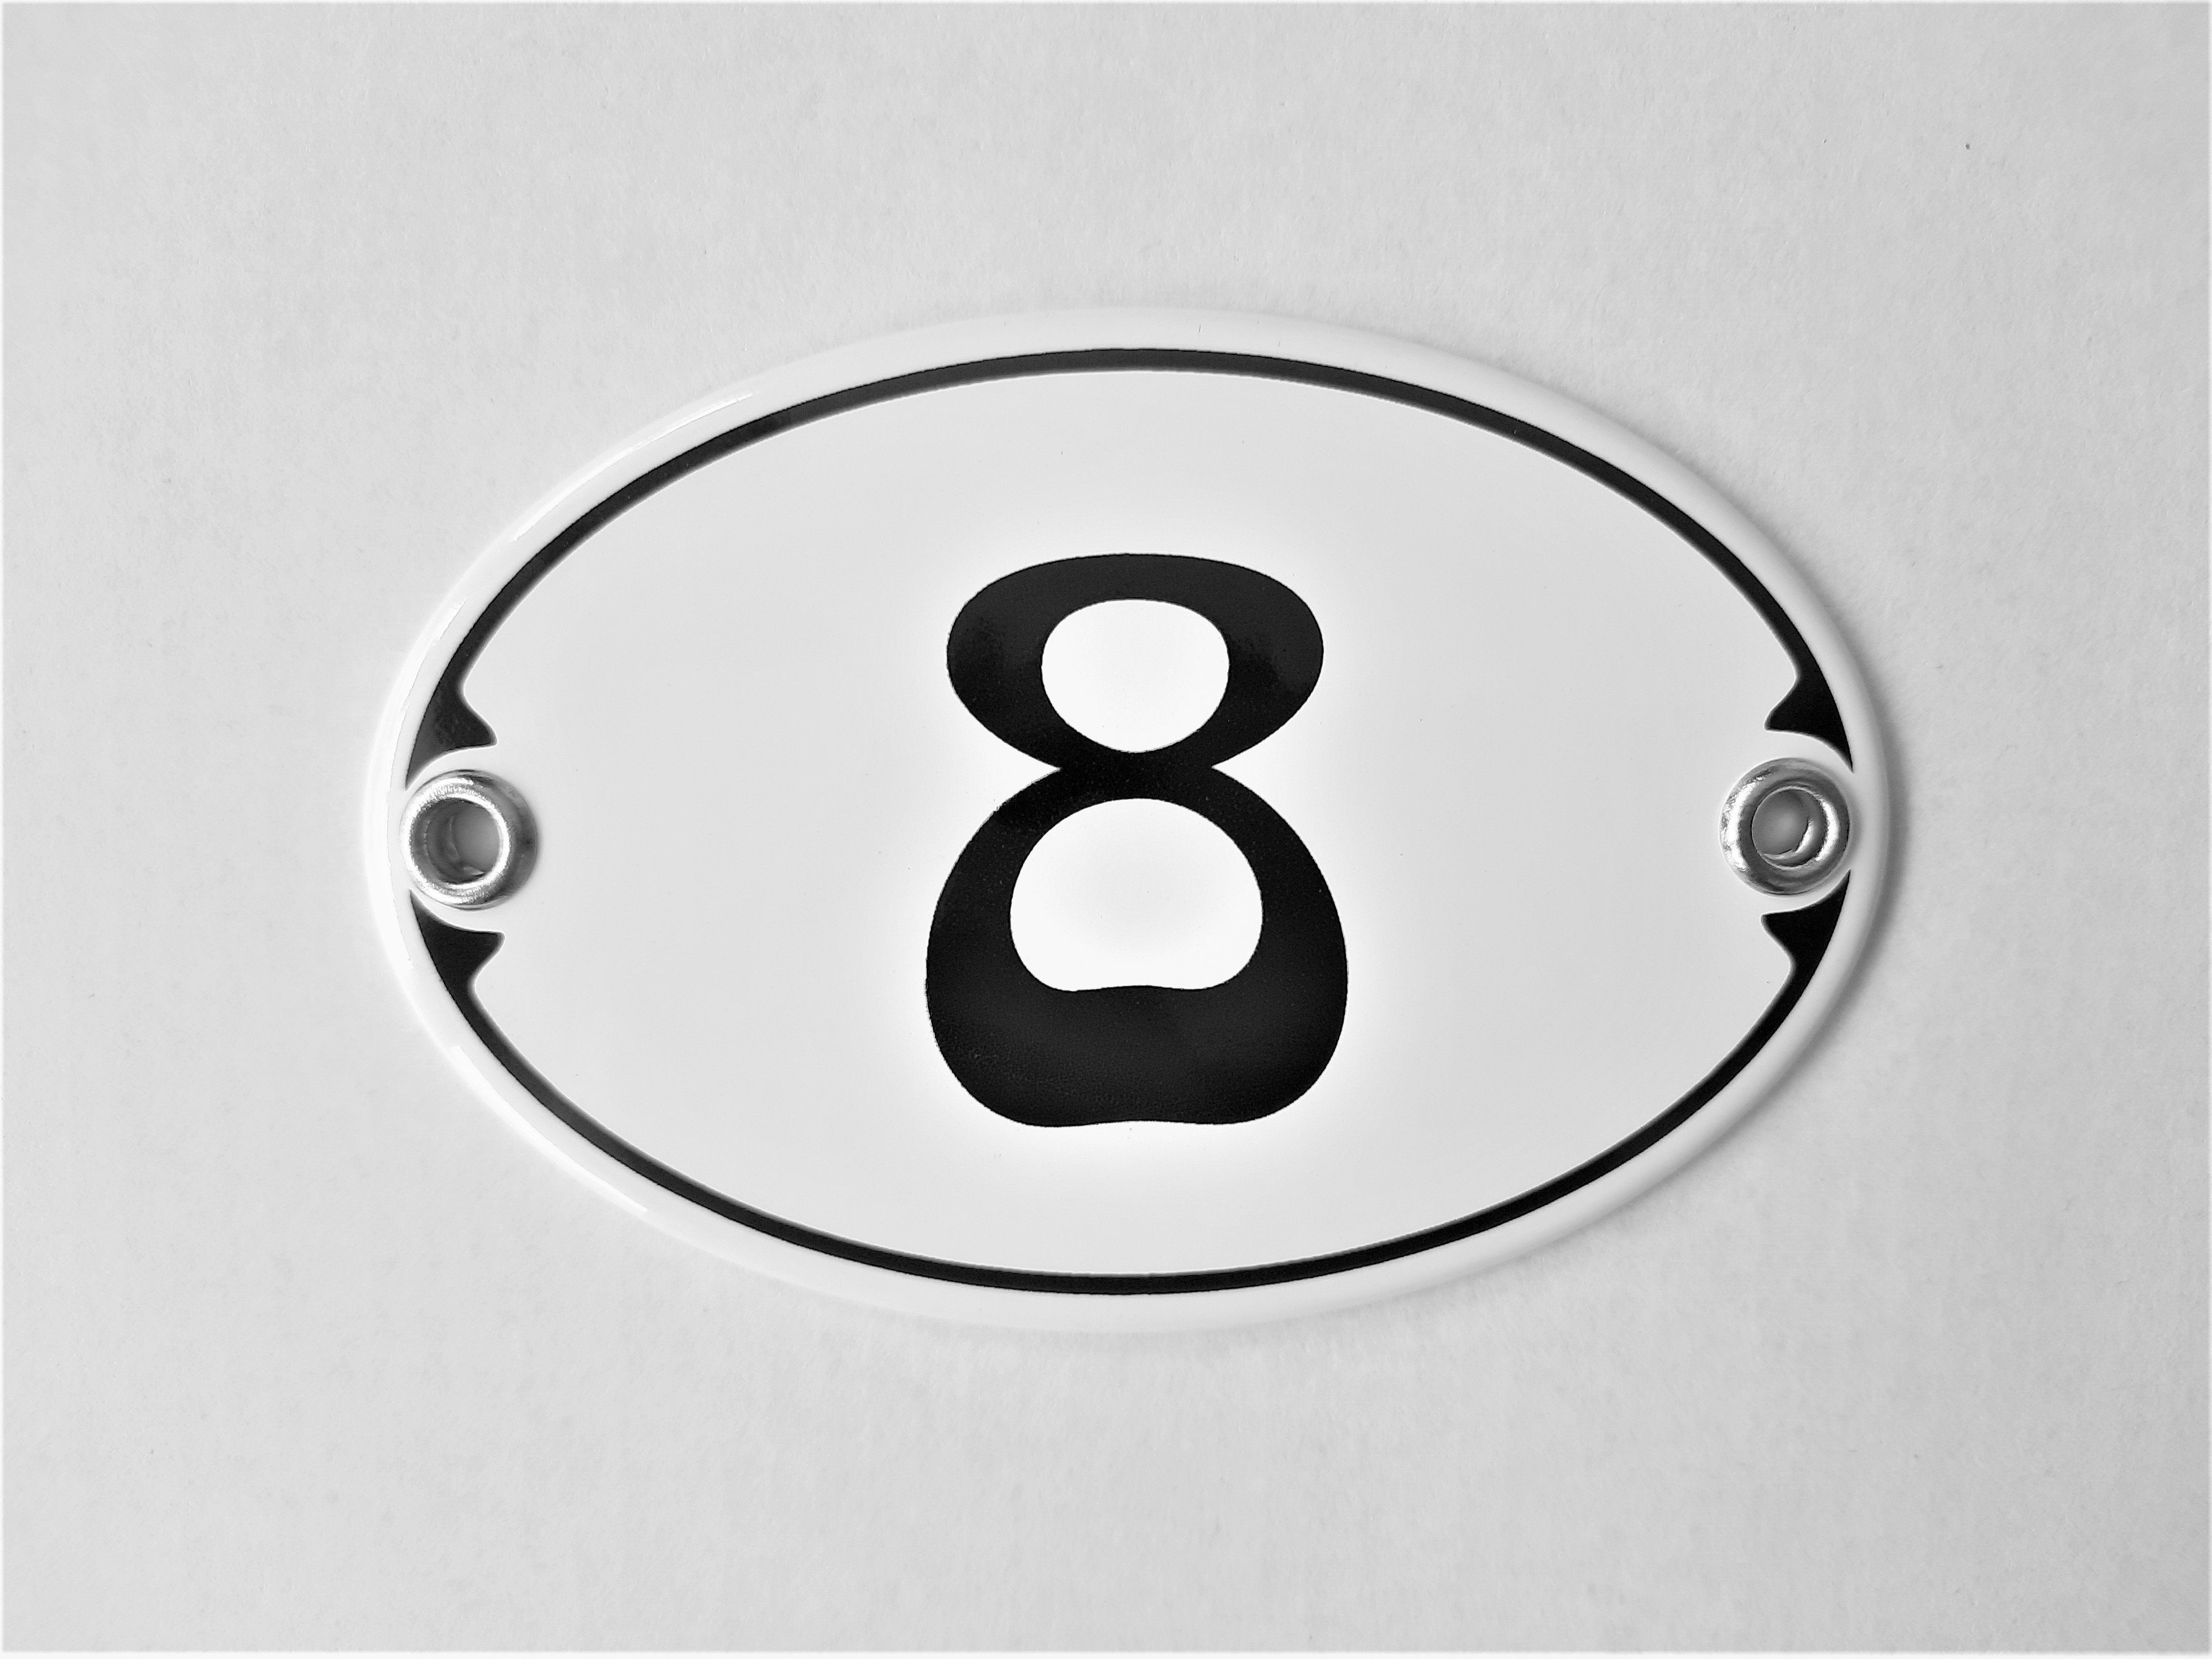 Elina Email Schilder Hausnummer Zahlenschild "8", (Emaille/Email)